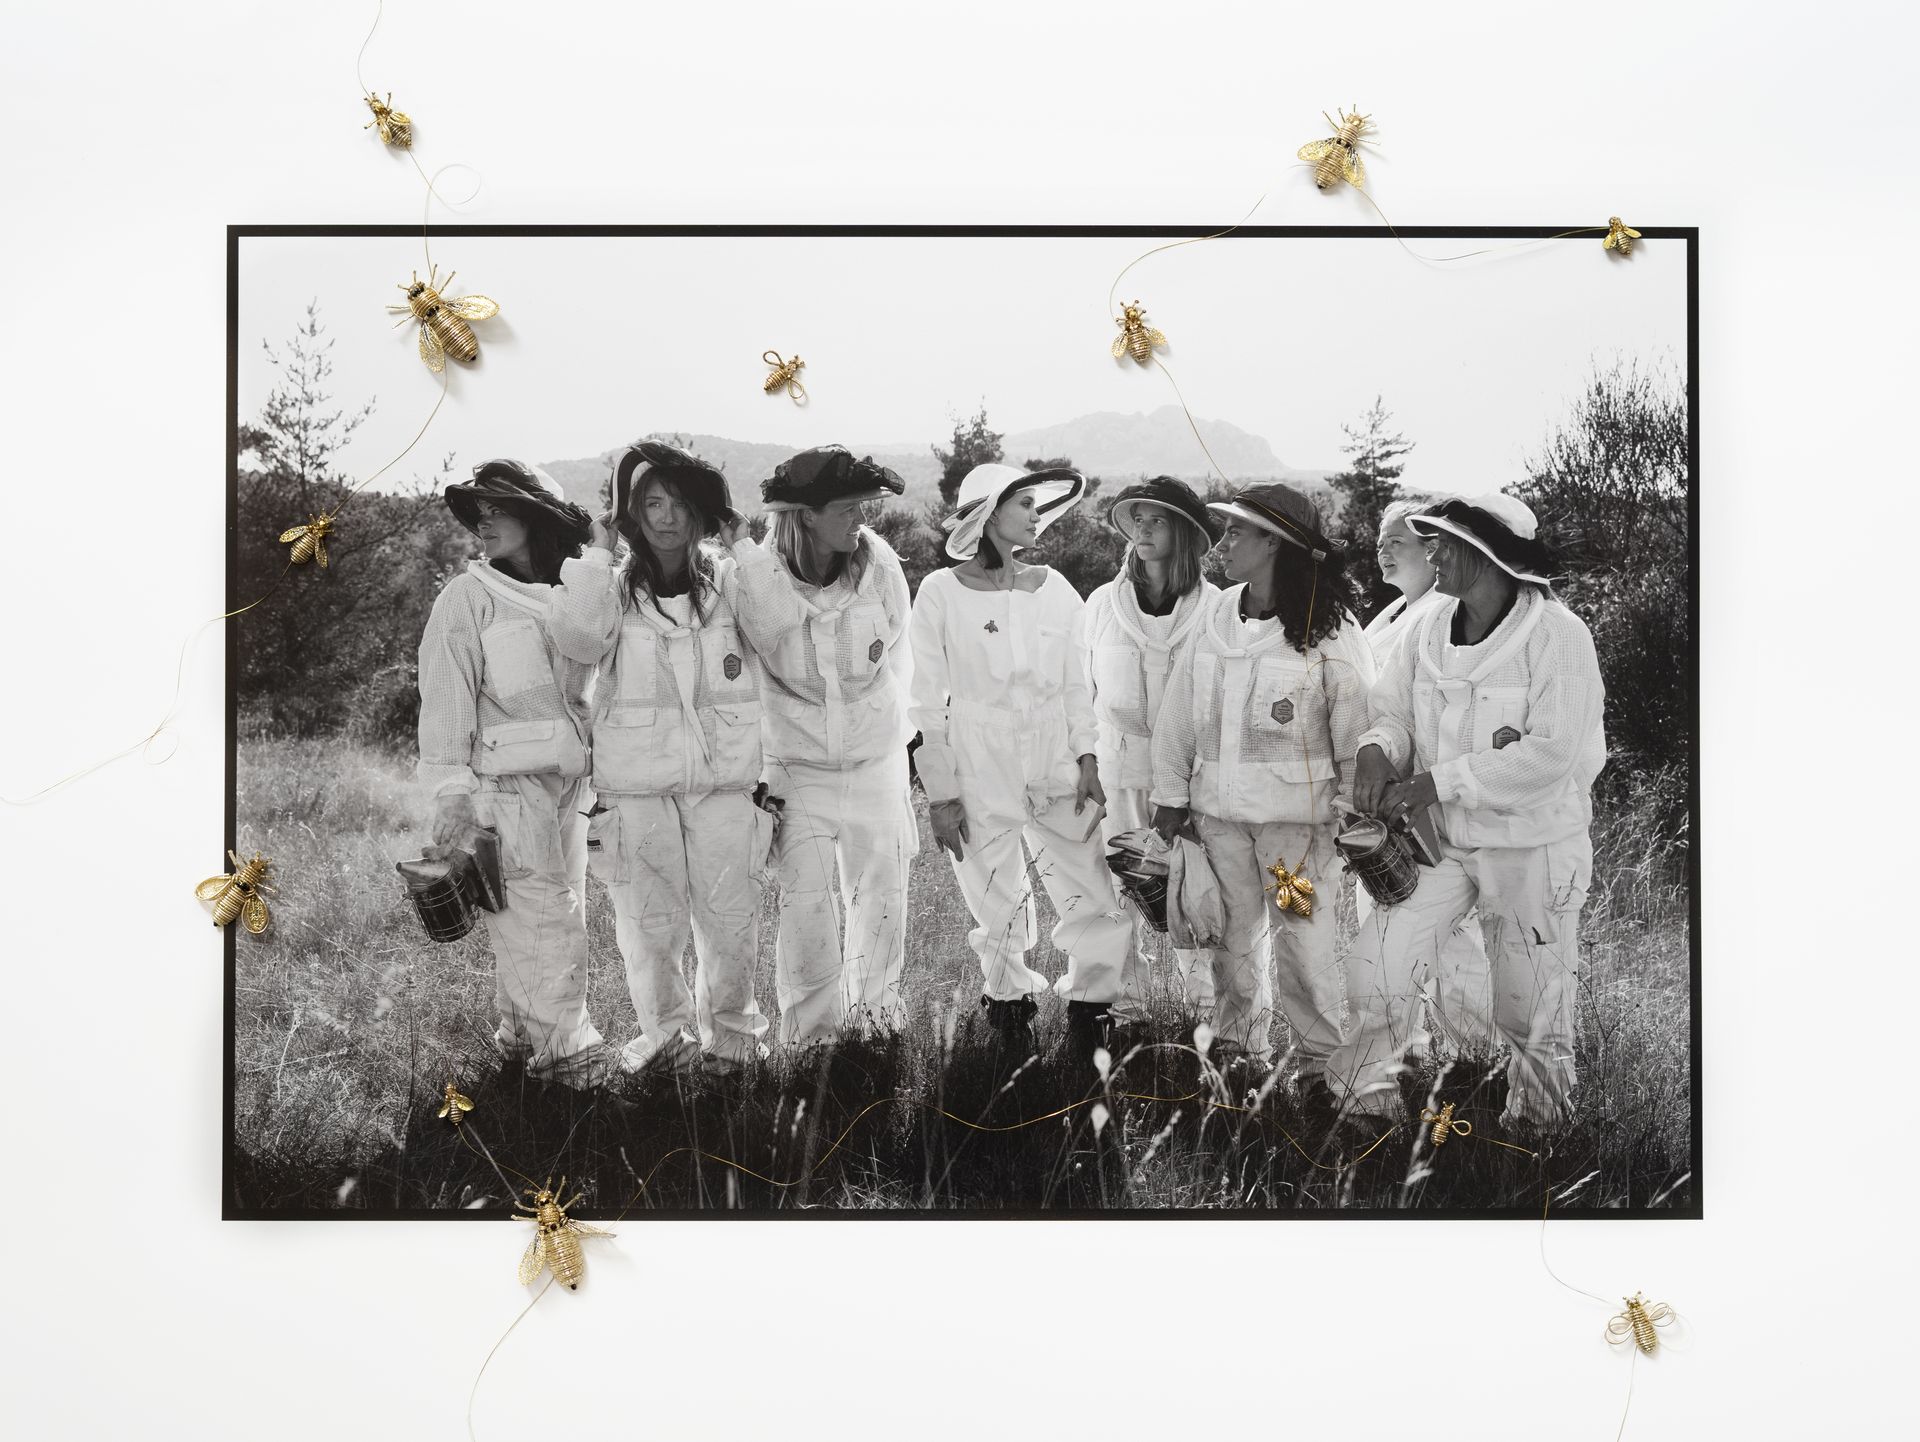 angelina jolie women for bees beekeeper